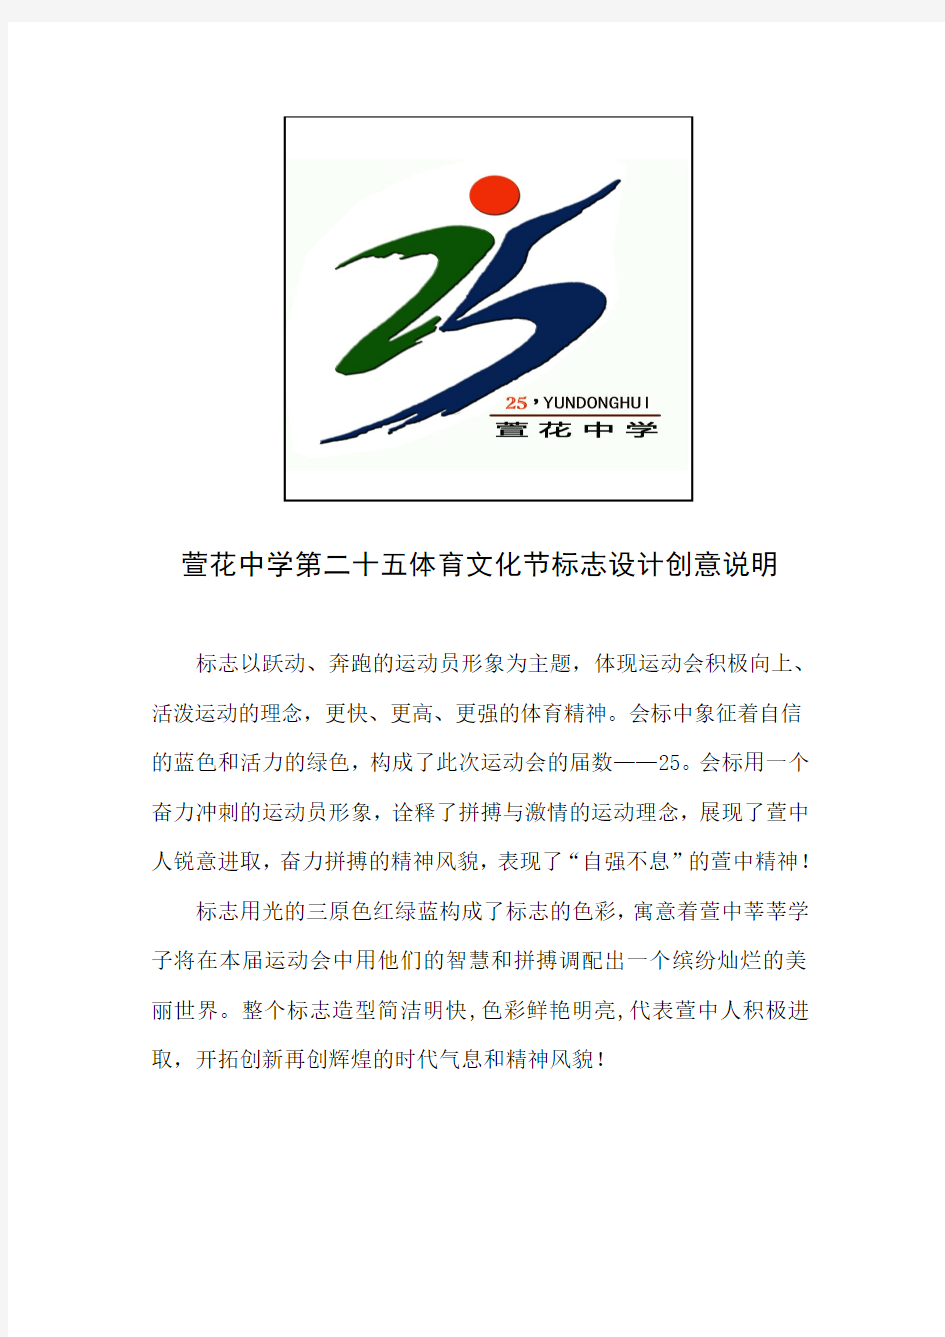 第25届体育文化节标志设计创意说明